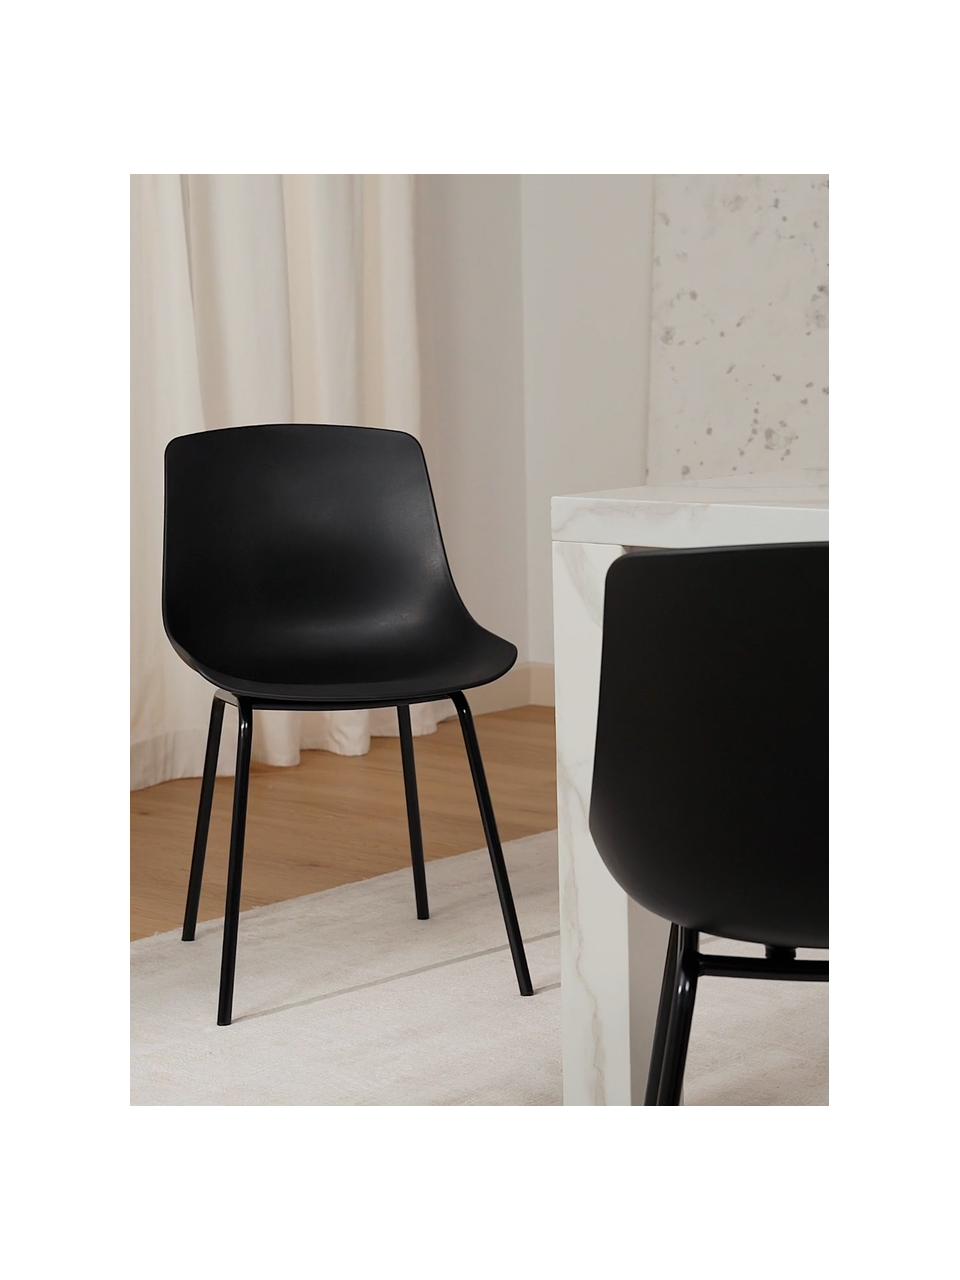 Kunststoffen stoelen met poten, 2 stuks | Westwing